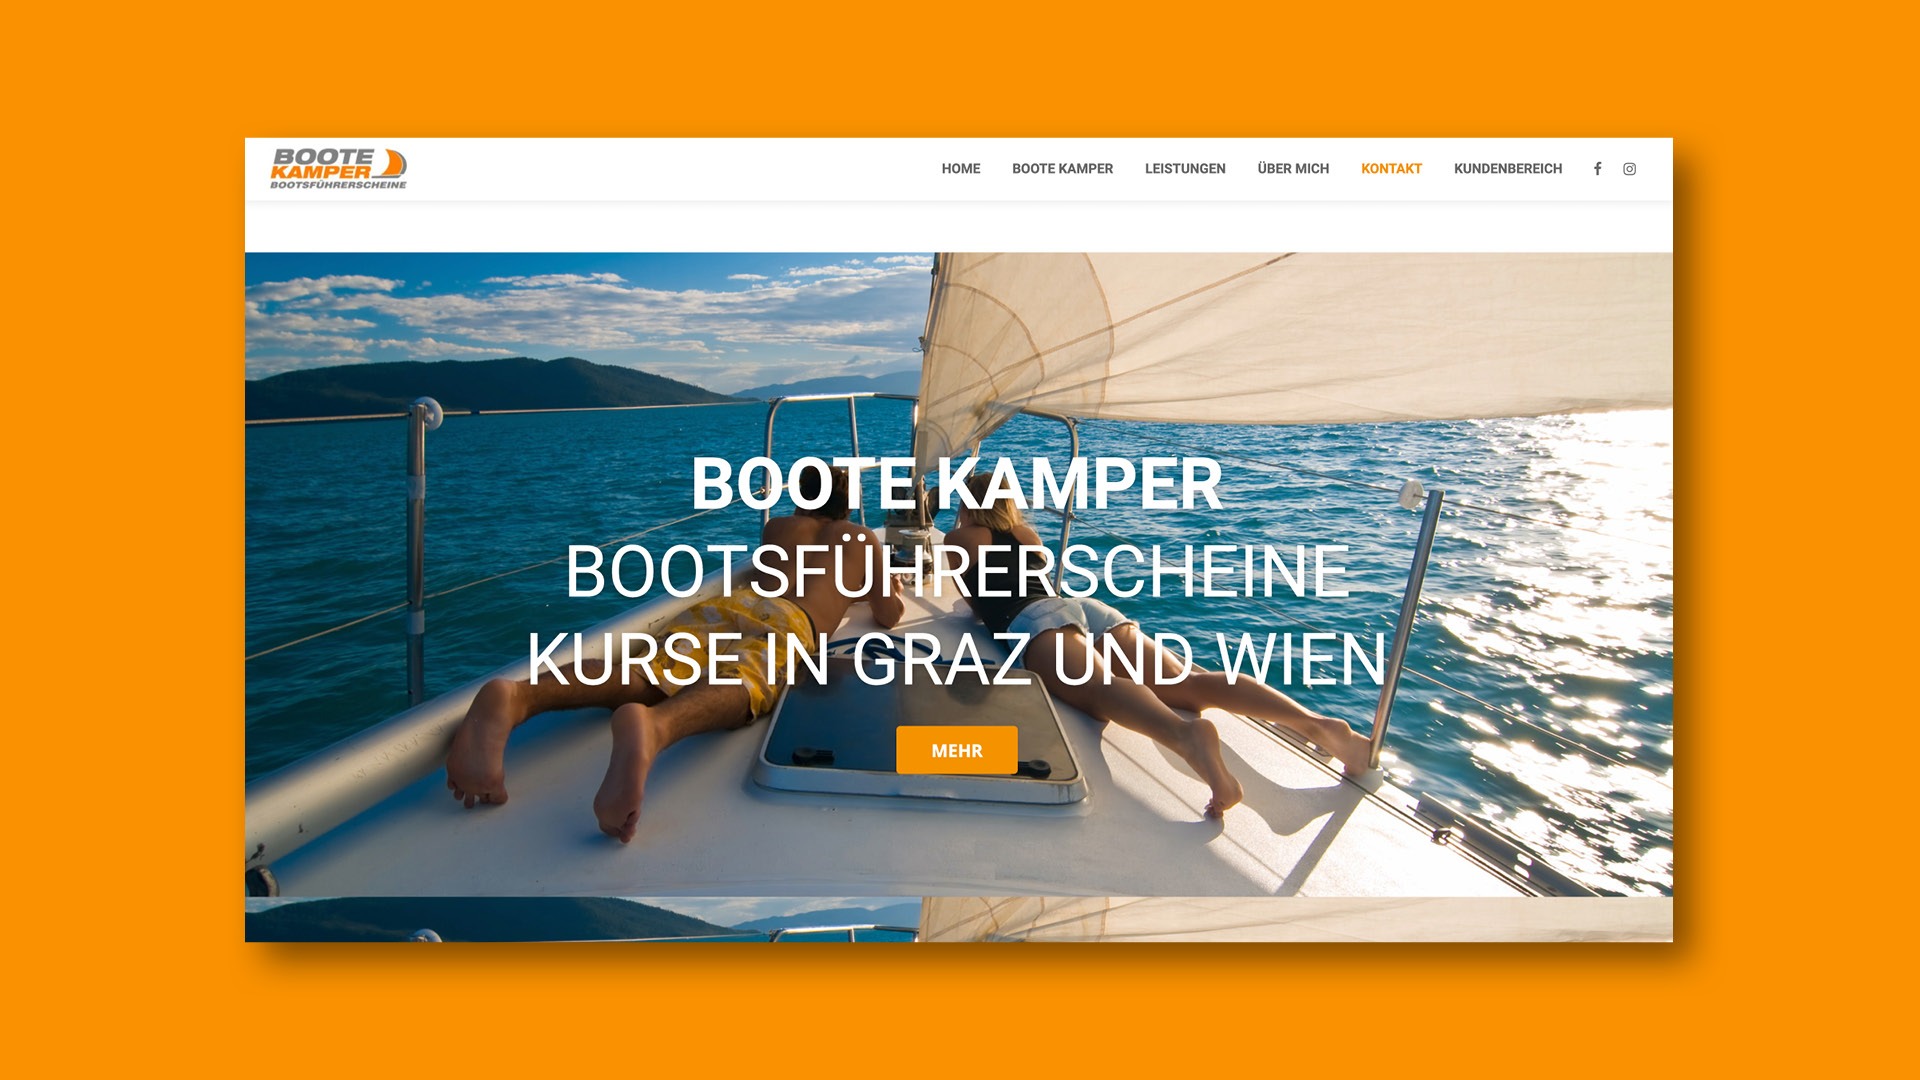 Website Design for Boote Kamper.